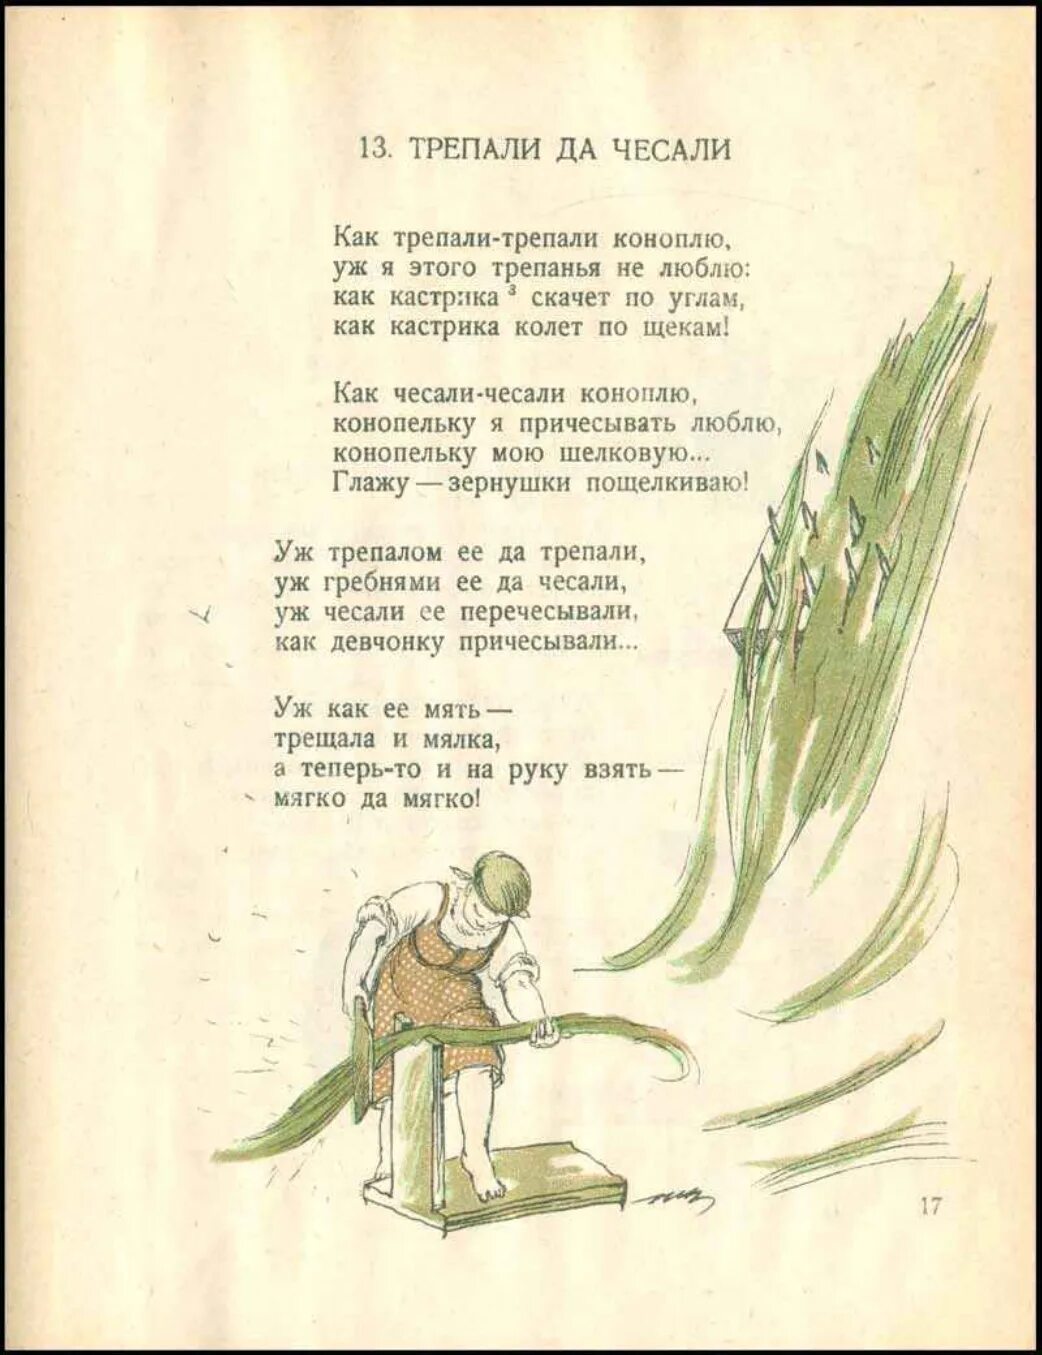 Книга конопель-Конопелька. Конопель Конопелька книга 1926. Детская книжка про коноплю, 1926 год.. Стихотворение 1926 года